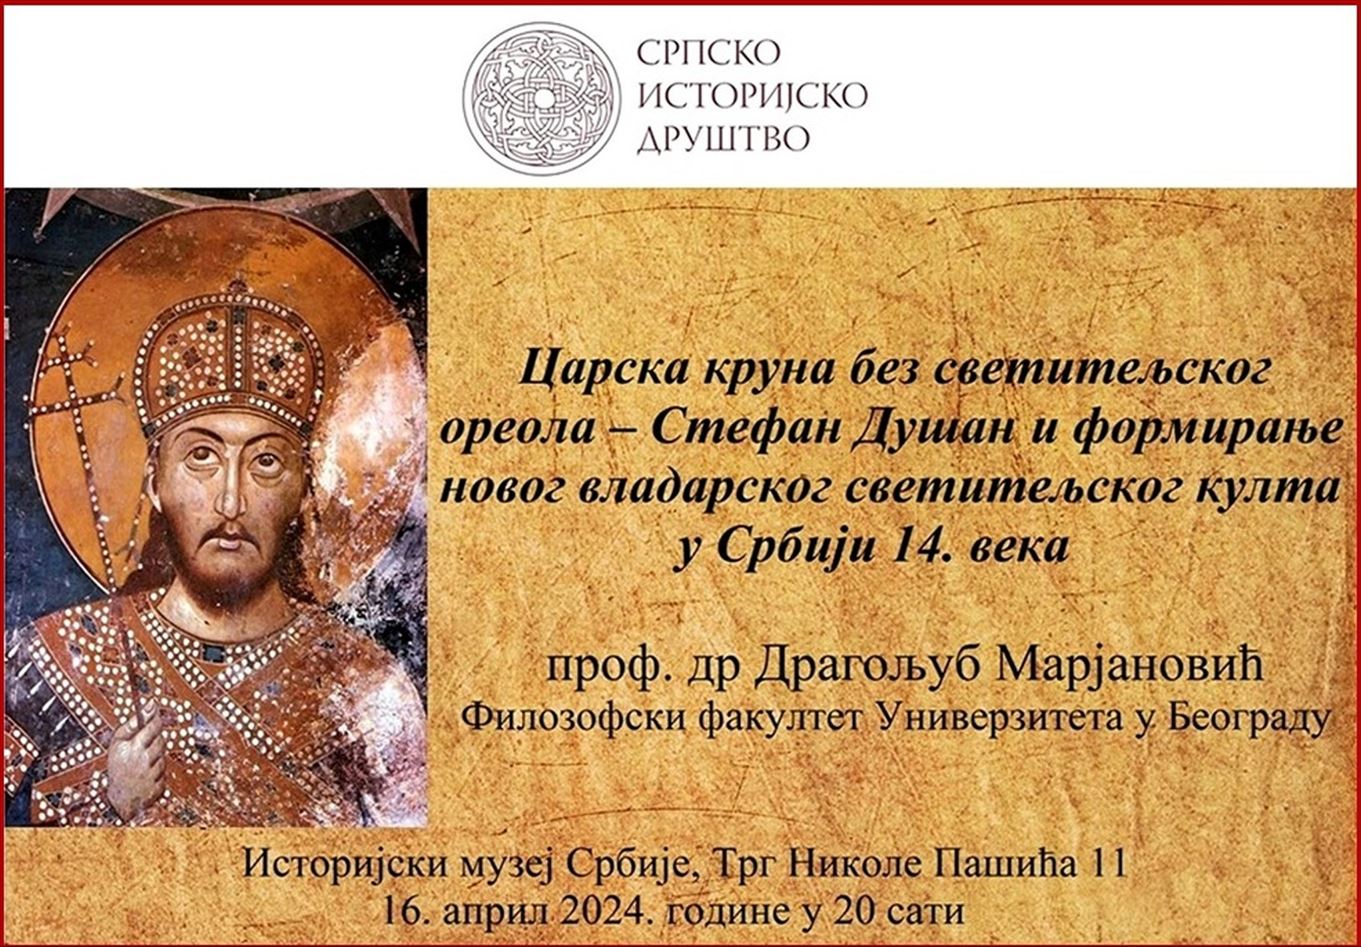 Плакат за предавање „Царска круна без светитељског ореола“. Фотографија је власништво Српоског историјског друштва.